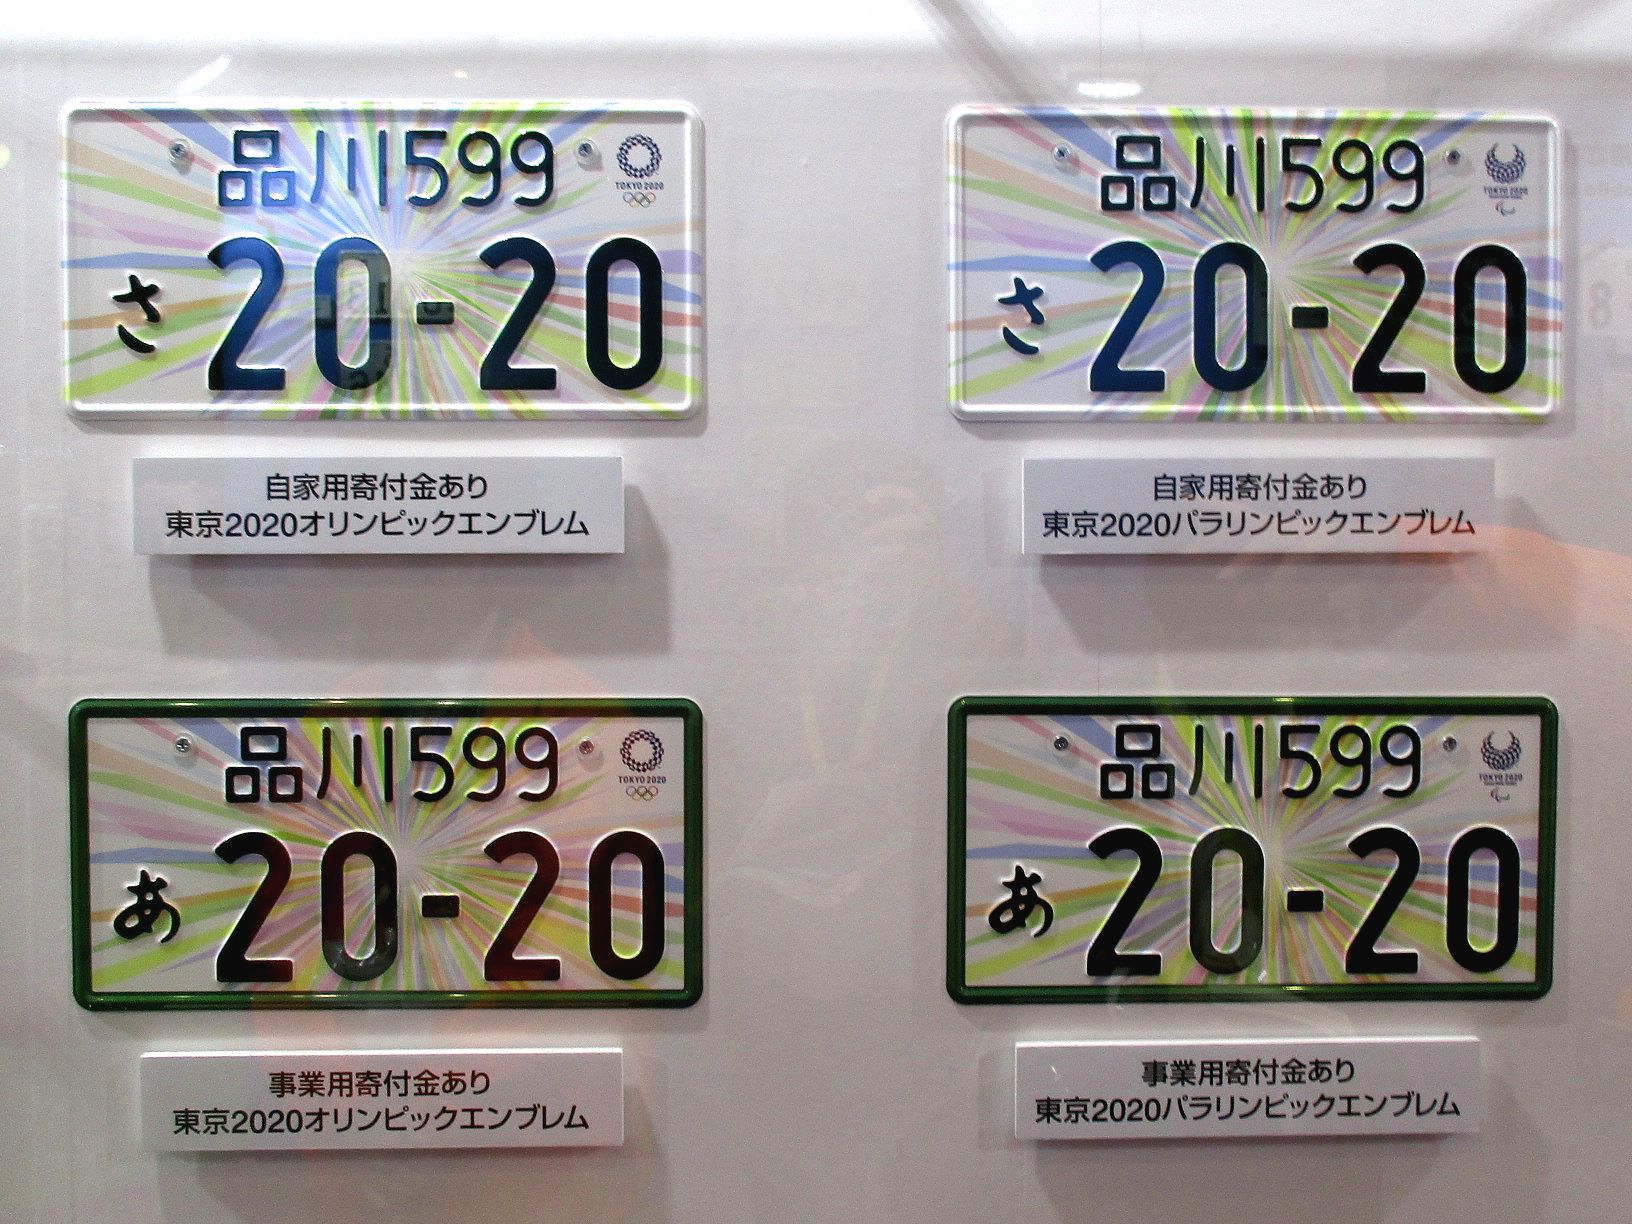 東京モーターショー17 隠れ名ブースその1 東京オリンピック パラリンピック記念 特別仕様ナンバープレートの実物があった Clicccar Com